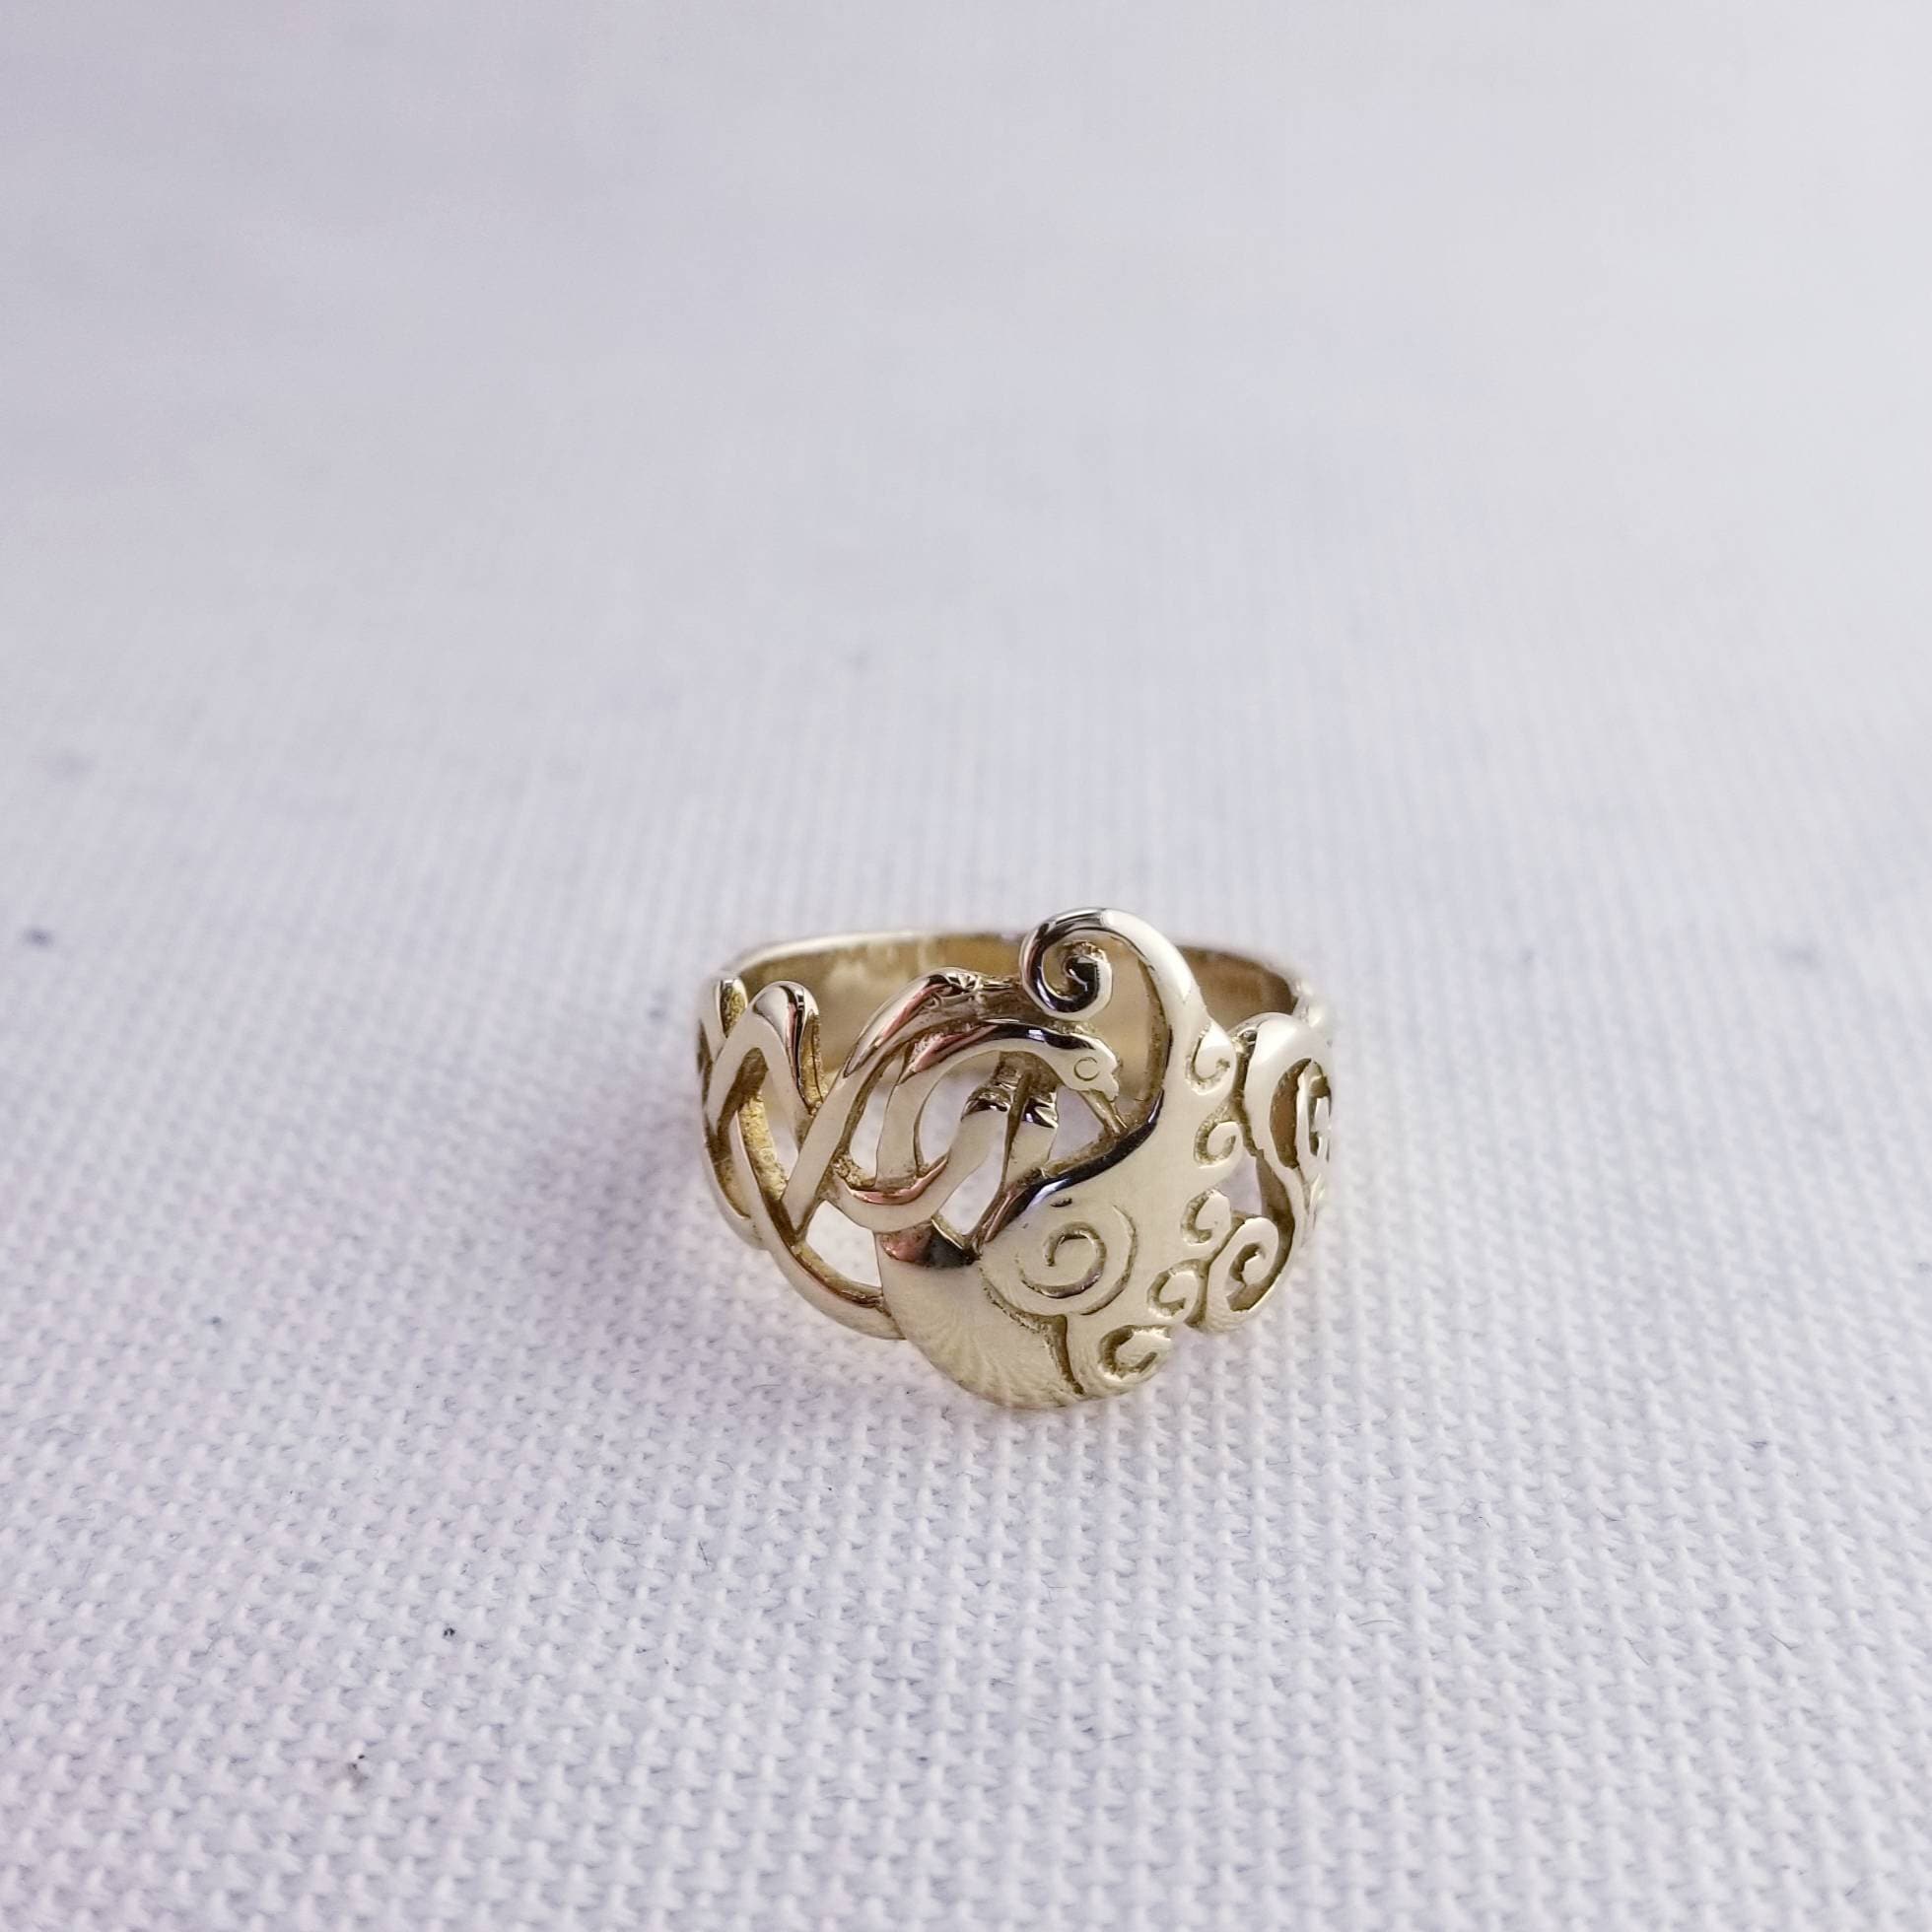 Buy 916 Gold Kids Ring Kr12 Online | P S Jewellery - JewelFlix